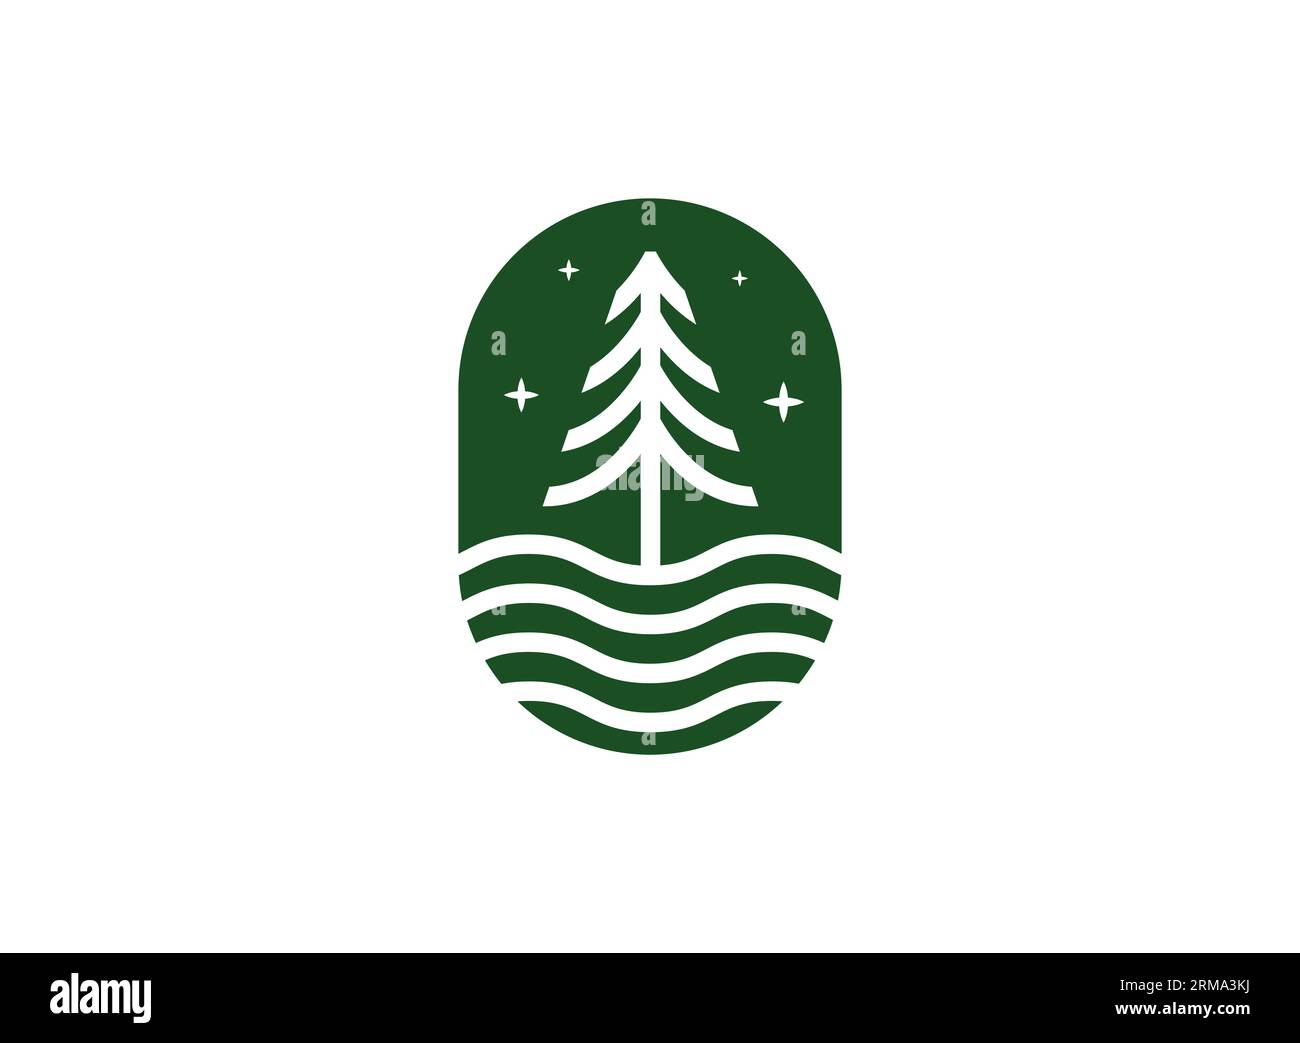 Wir stellen vor: Unsere Designvorlage für das natürliche Logo „Pine Tree Circle“ – die perfekte Ergänzung zu Ihrer Markenidentität. Diese beeindruckende Logo-Vorlage fängt ein Stock Vektor